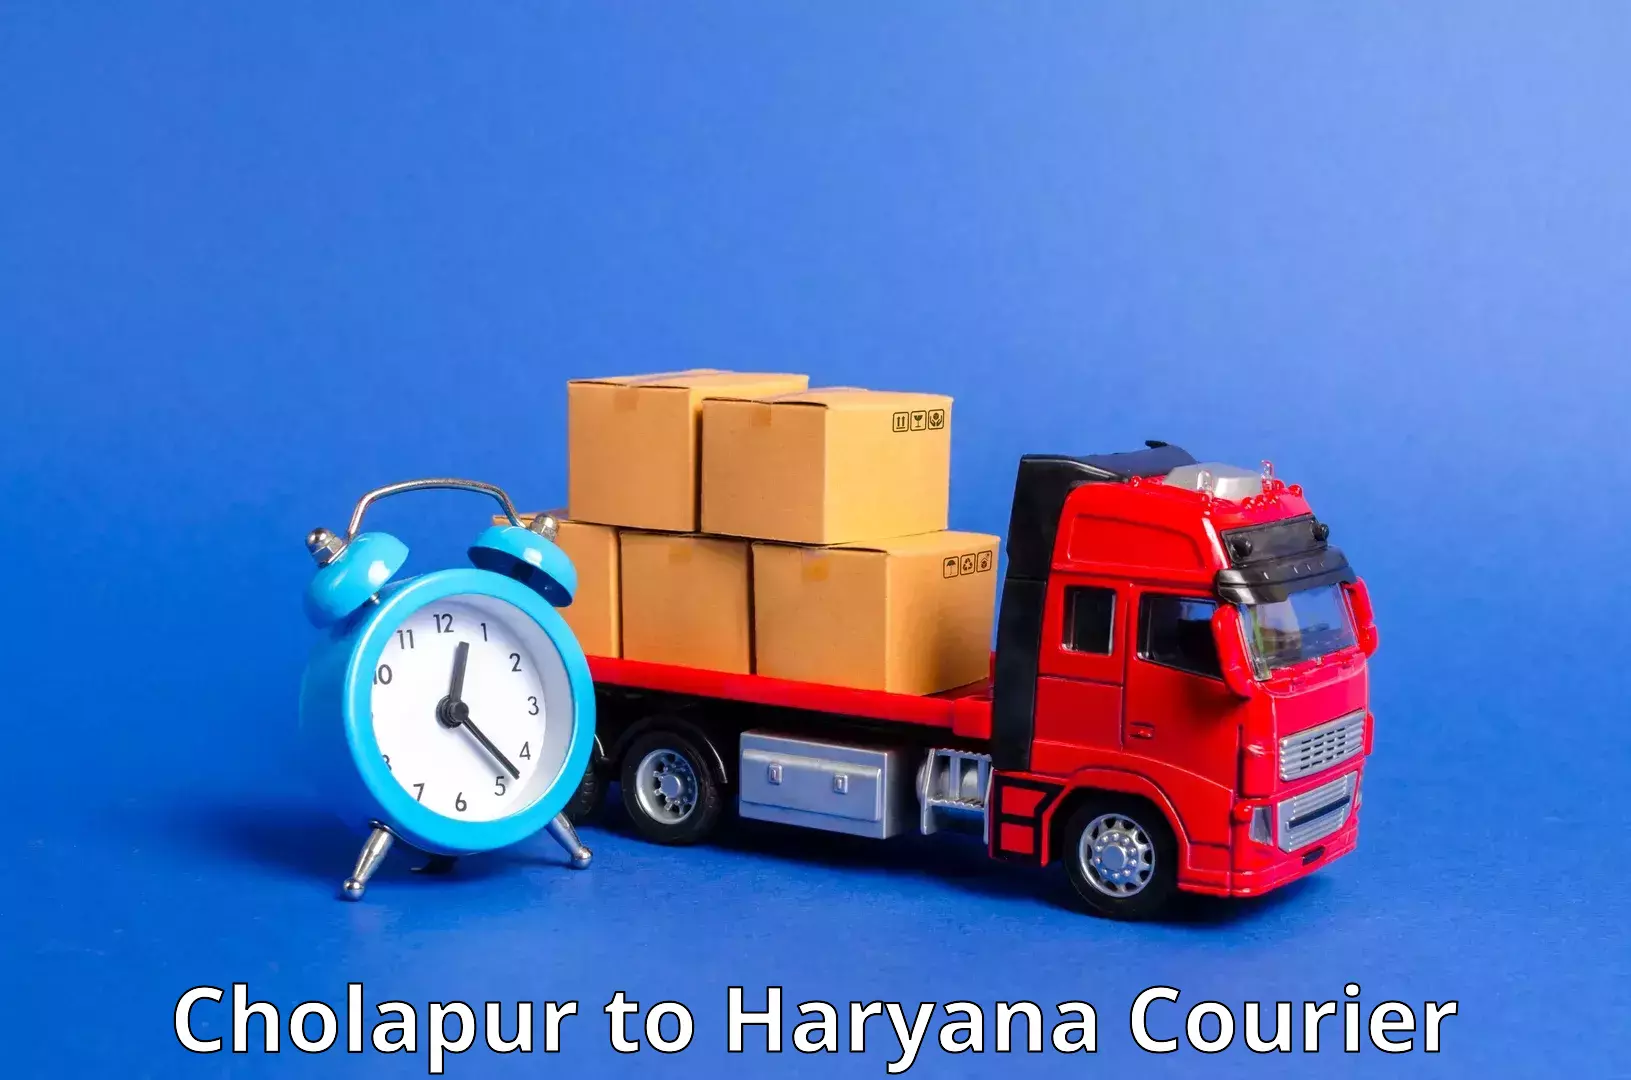 Logistics service provider Cholapur to Haryana